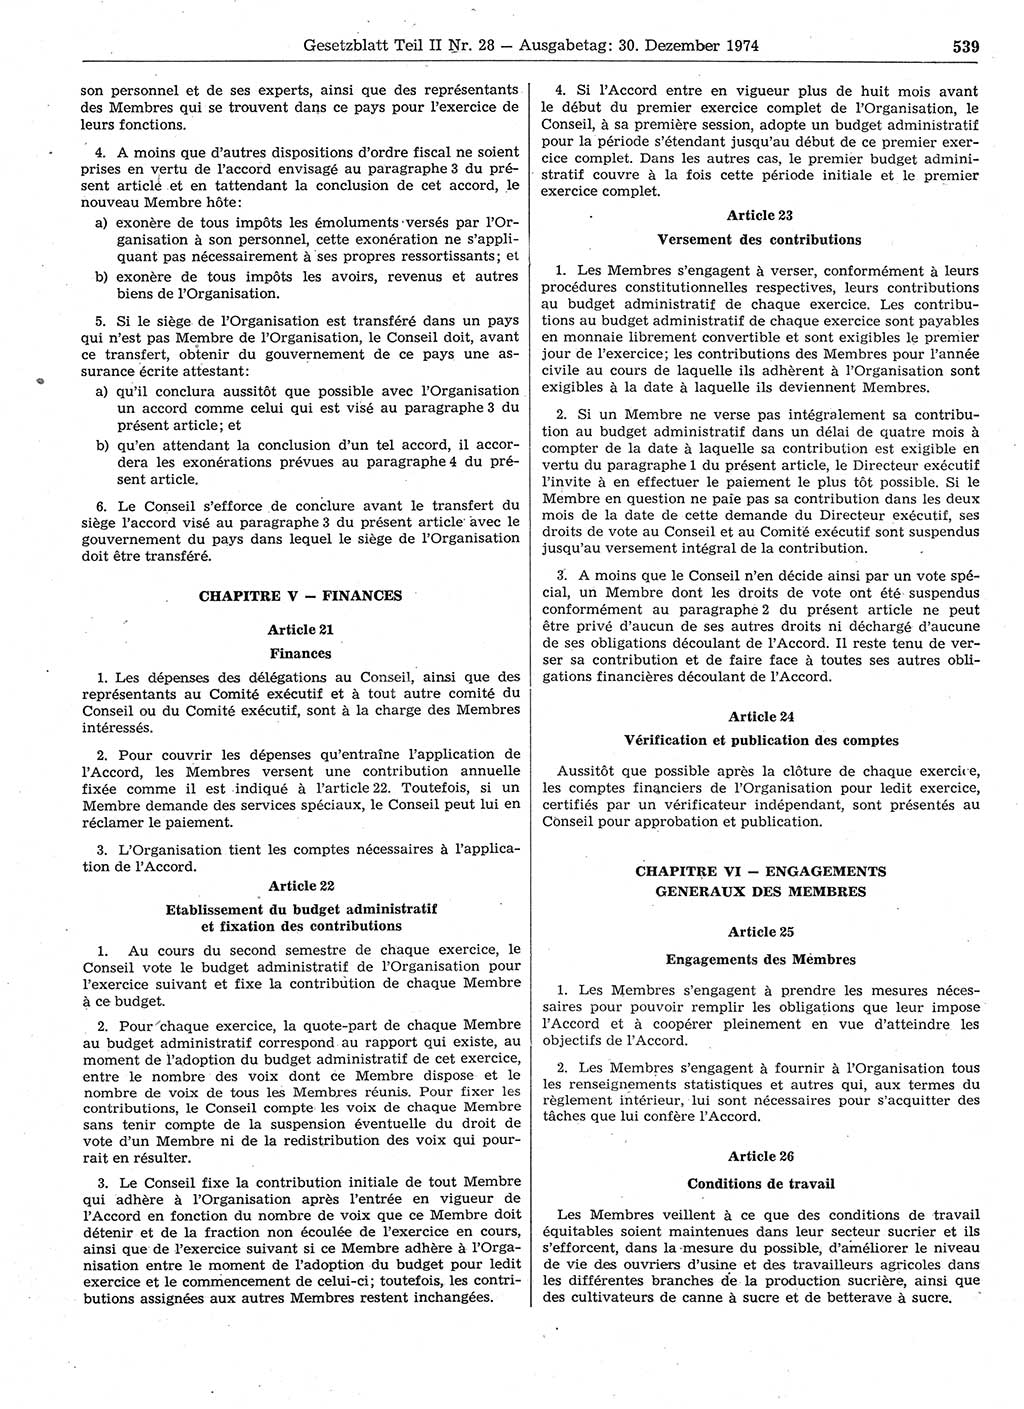 Gesetzblatt (GBl.) der Deutschen Demokratischen Republik (DDR) Teil ⅠⅠ 1974, Seite 539 (GBl. DDR ⅠⅠ 1974, S. 539)